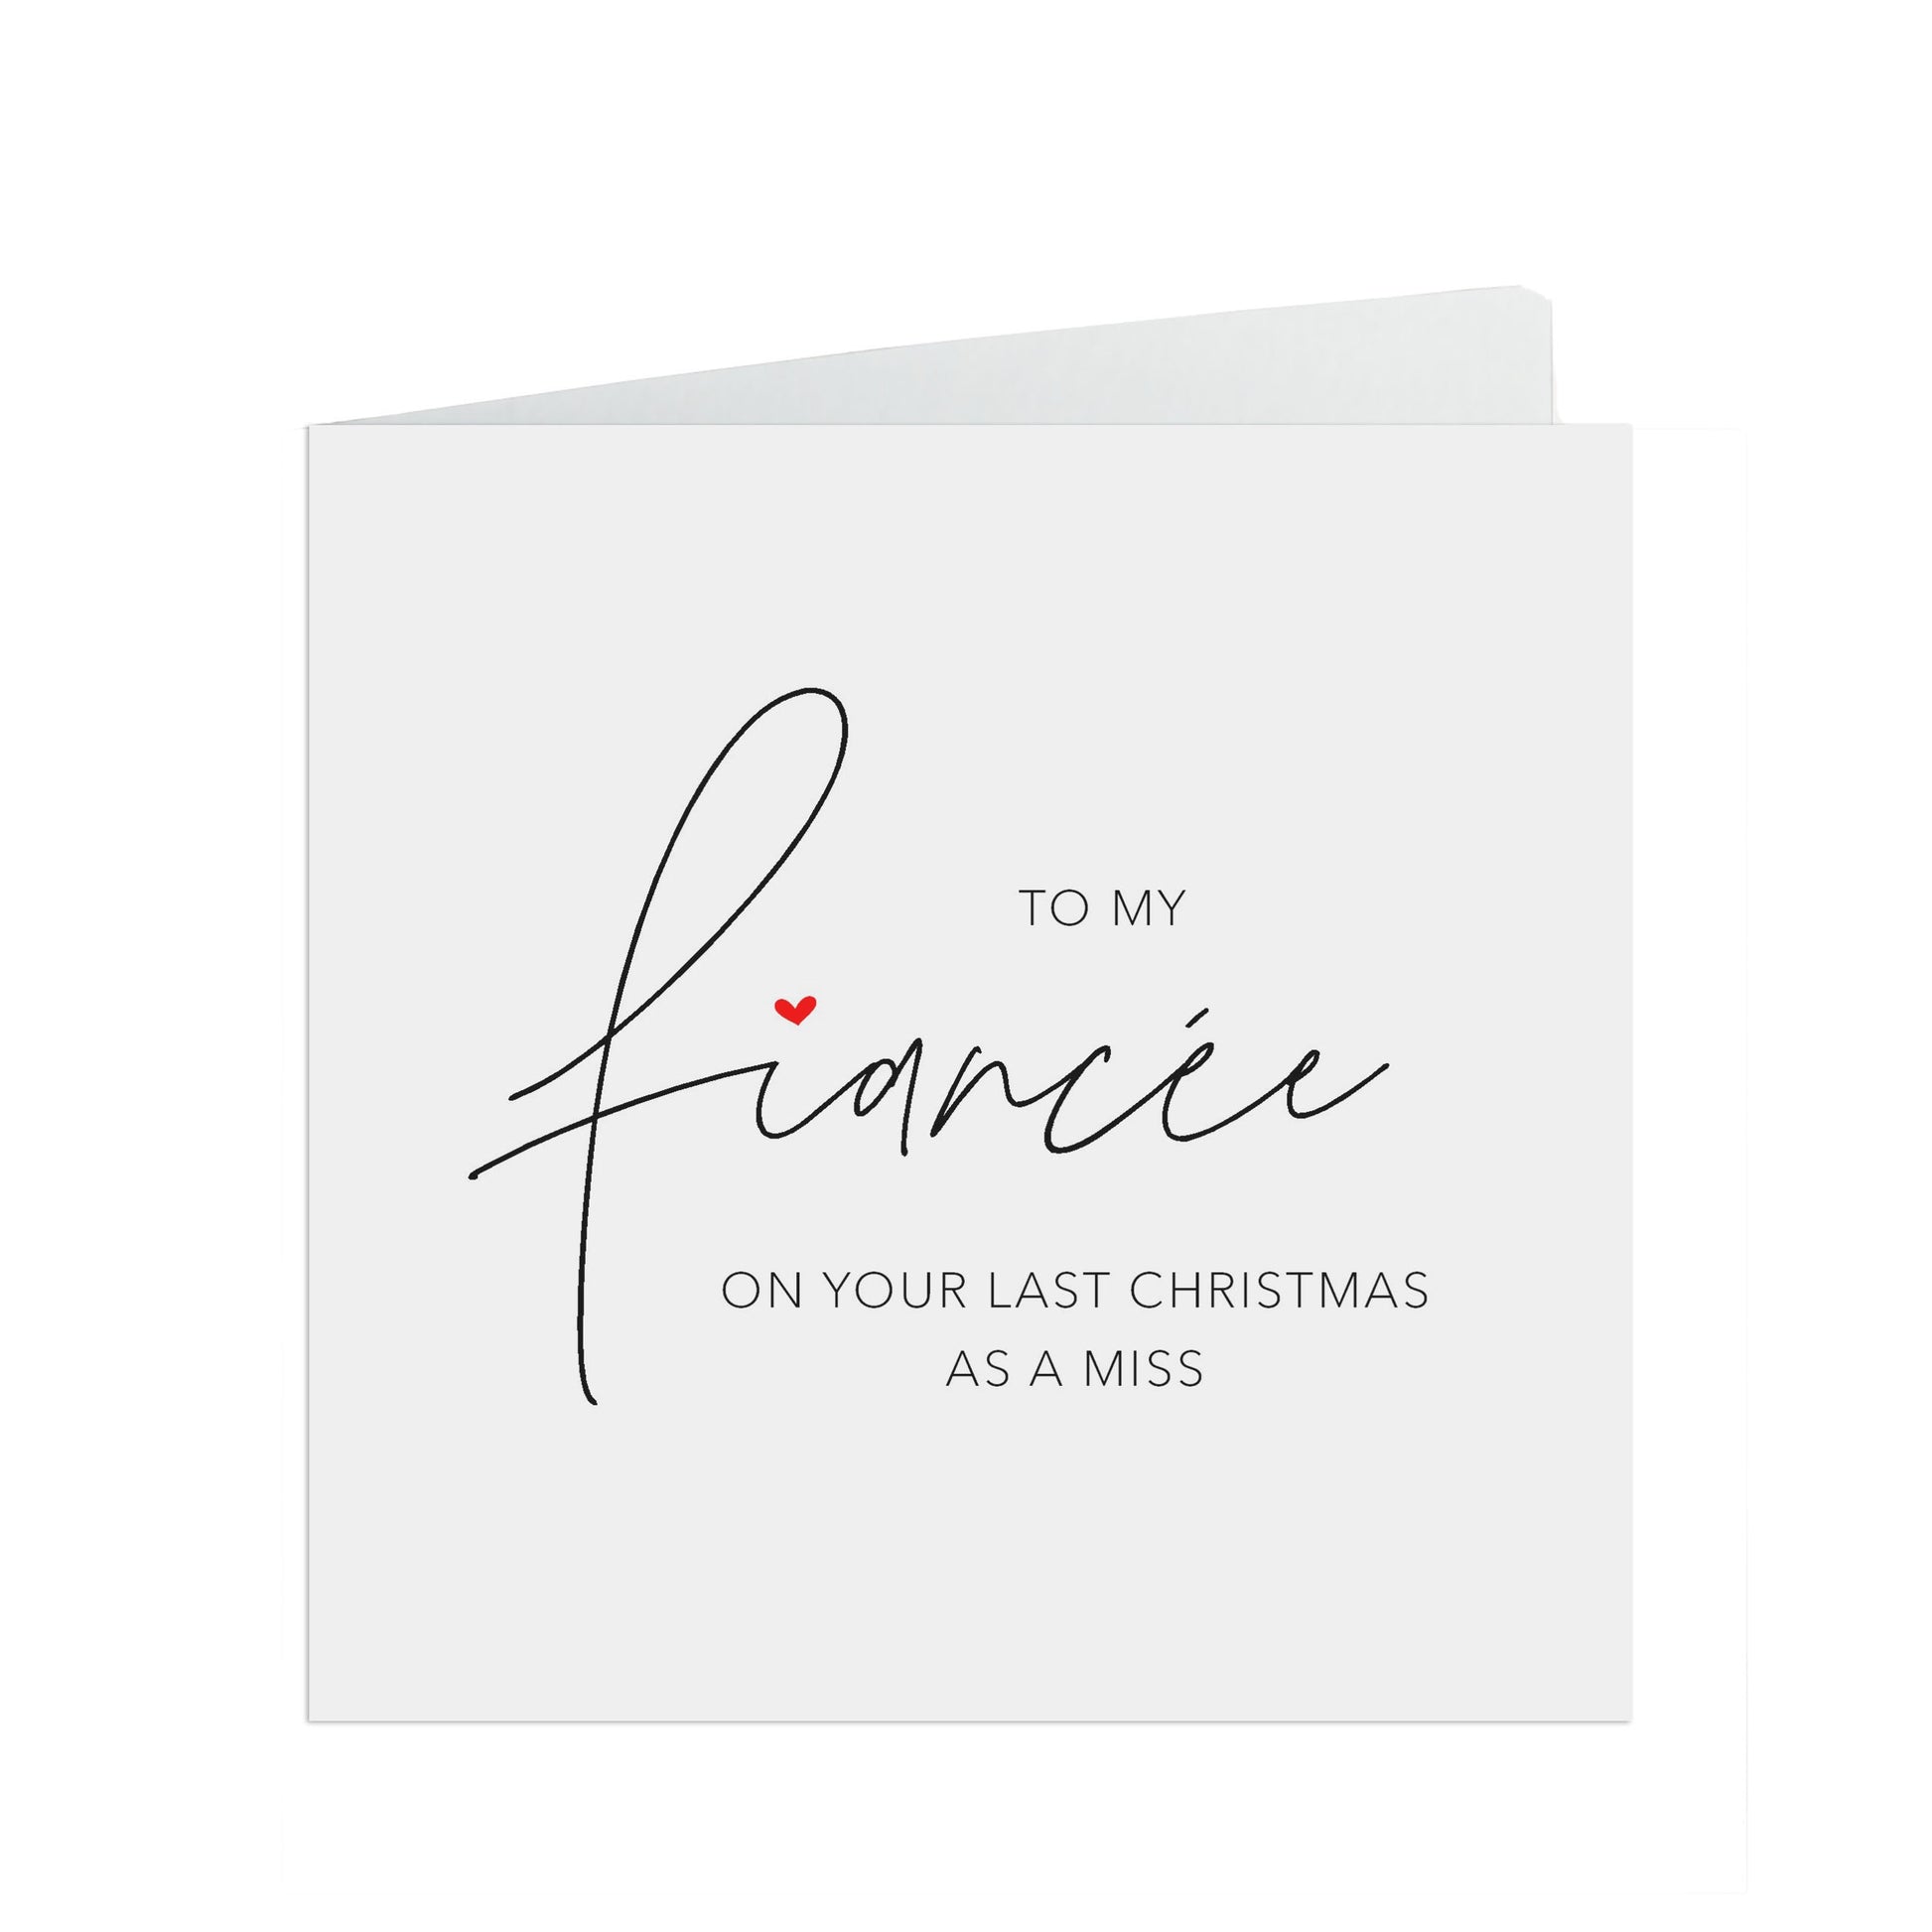 Last Christmas As A Miss, Fiancée Simple Romantic Christmas Card